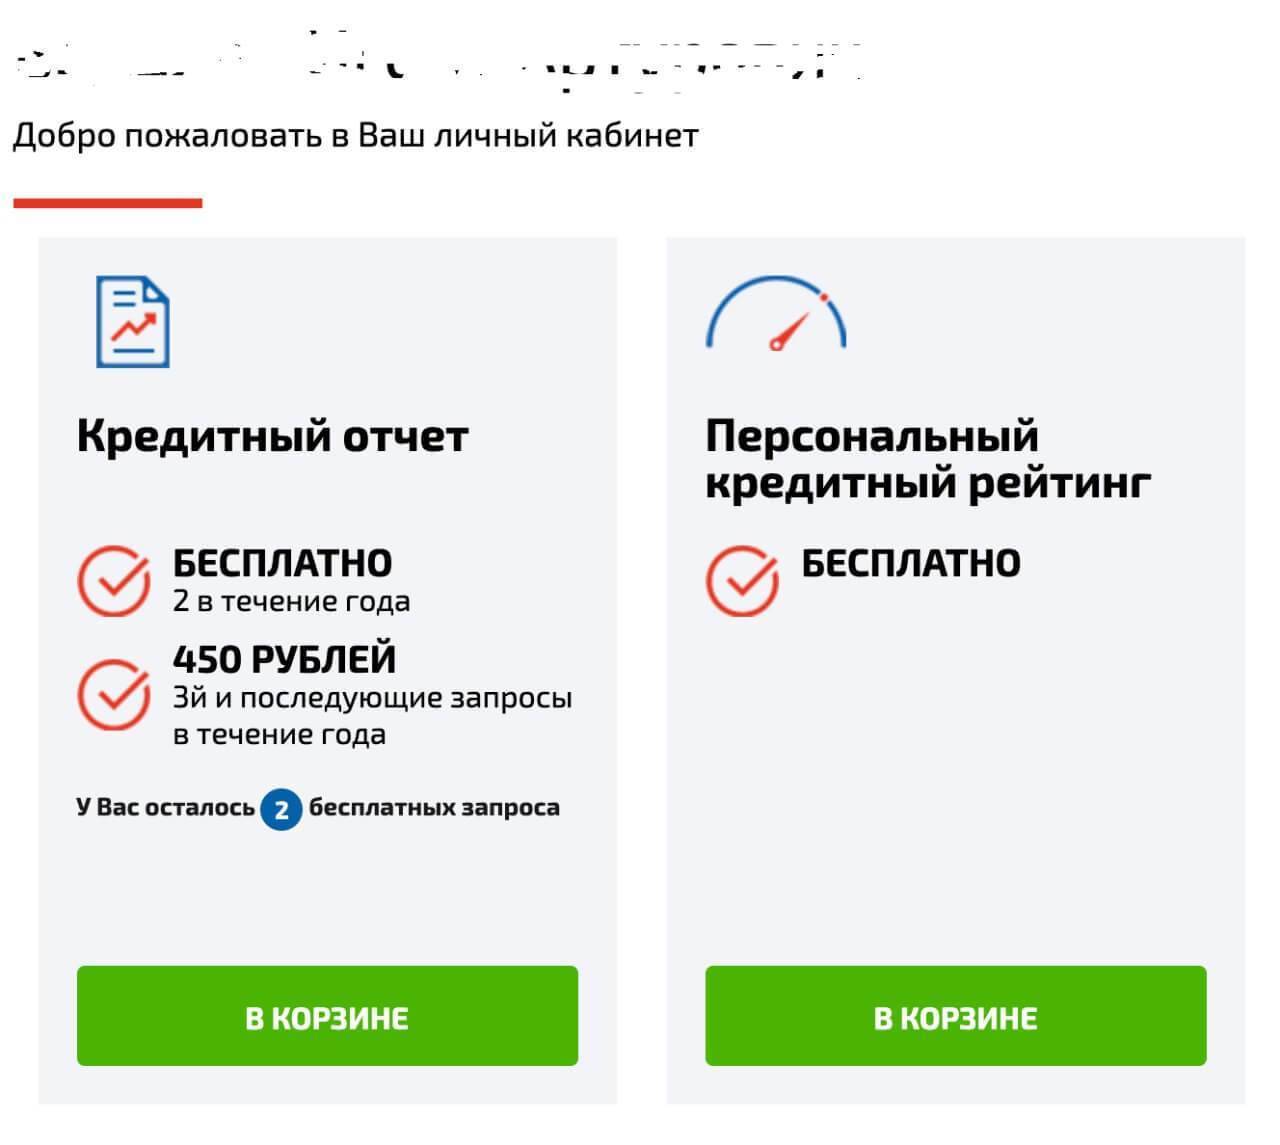 Fingram: как проверить бесплатно свою кредитную историю 16.08.2021 | банки.ру